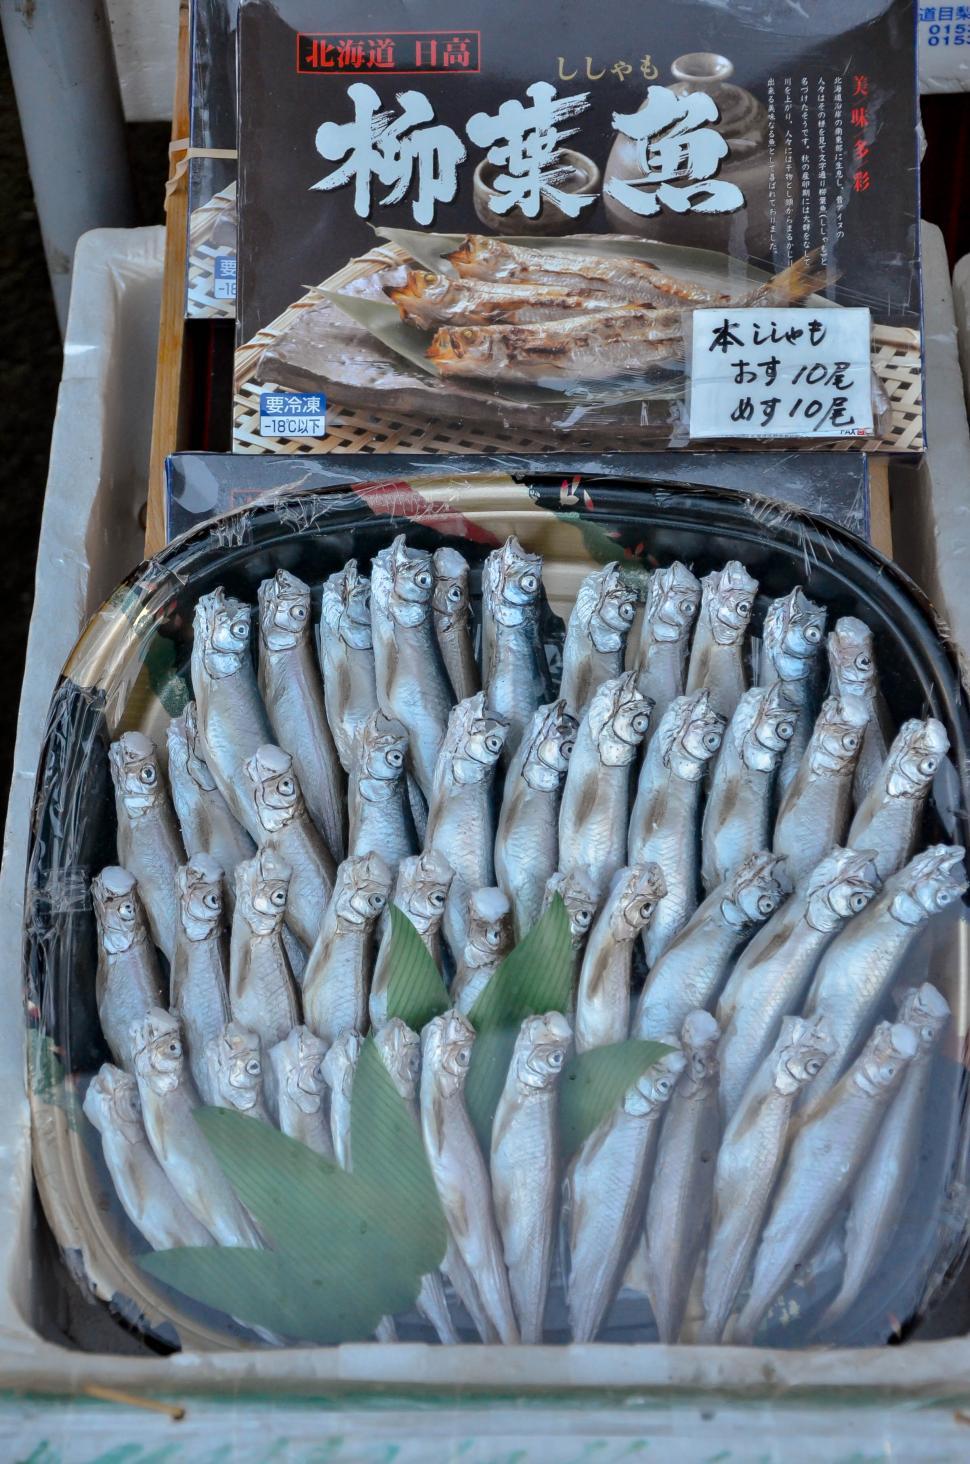 Free Image of Fresh Food - Small Fish at Market 